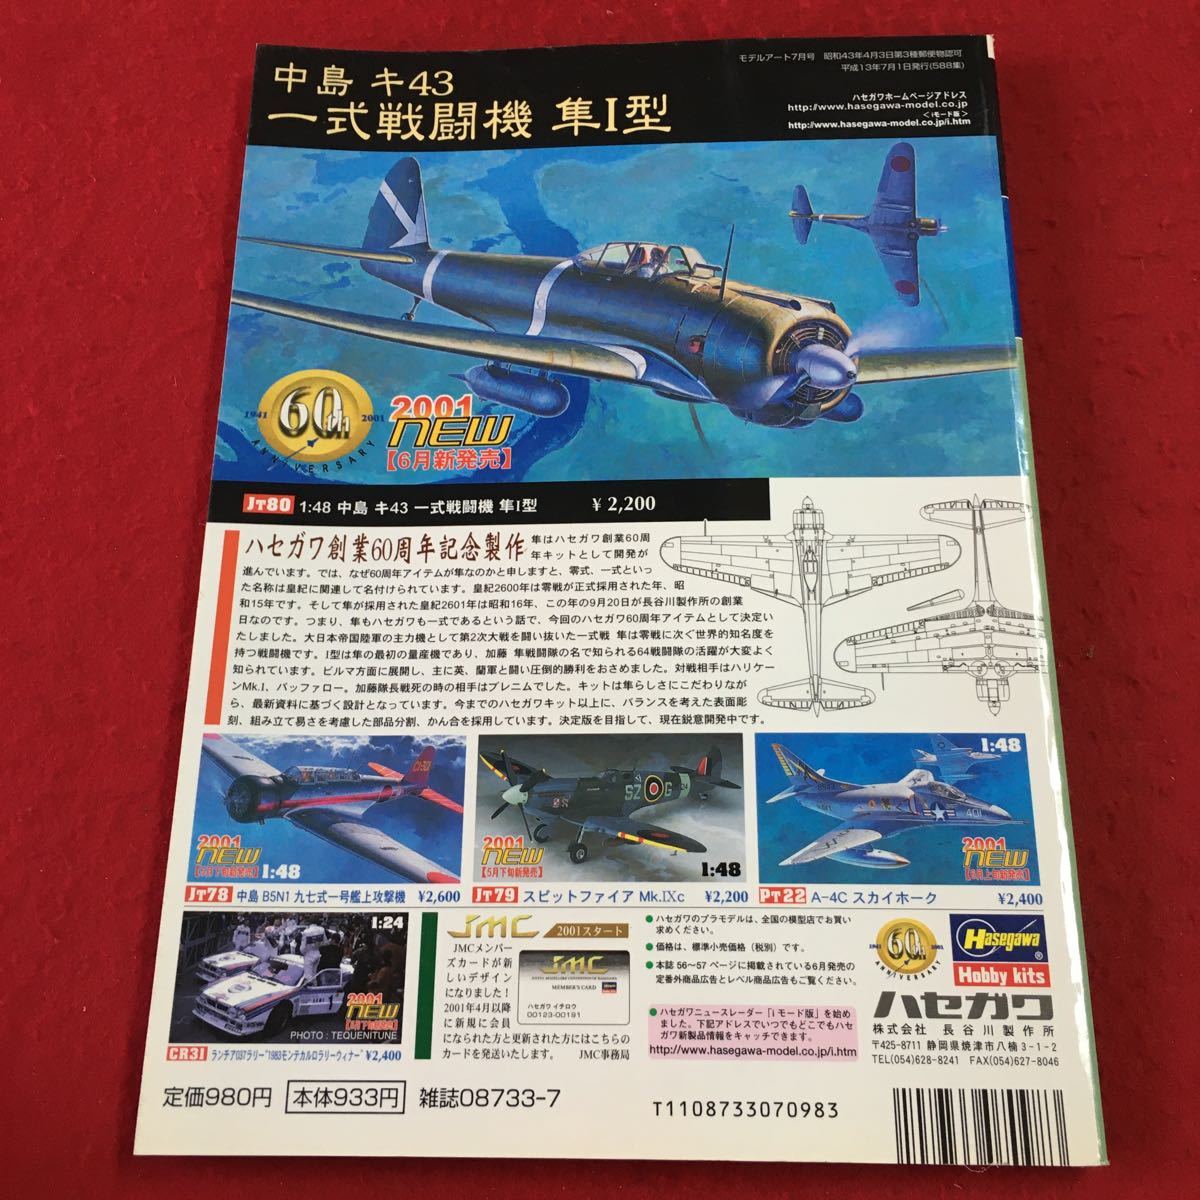 S7i-171 モデルアート 2001年7月号 No.588 平成13年7月1日 発行 モデルアート社 雑誌 戦闘機 飛行機 ミリタリー 模型 プラモデル 趣味 戦車_画像2